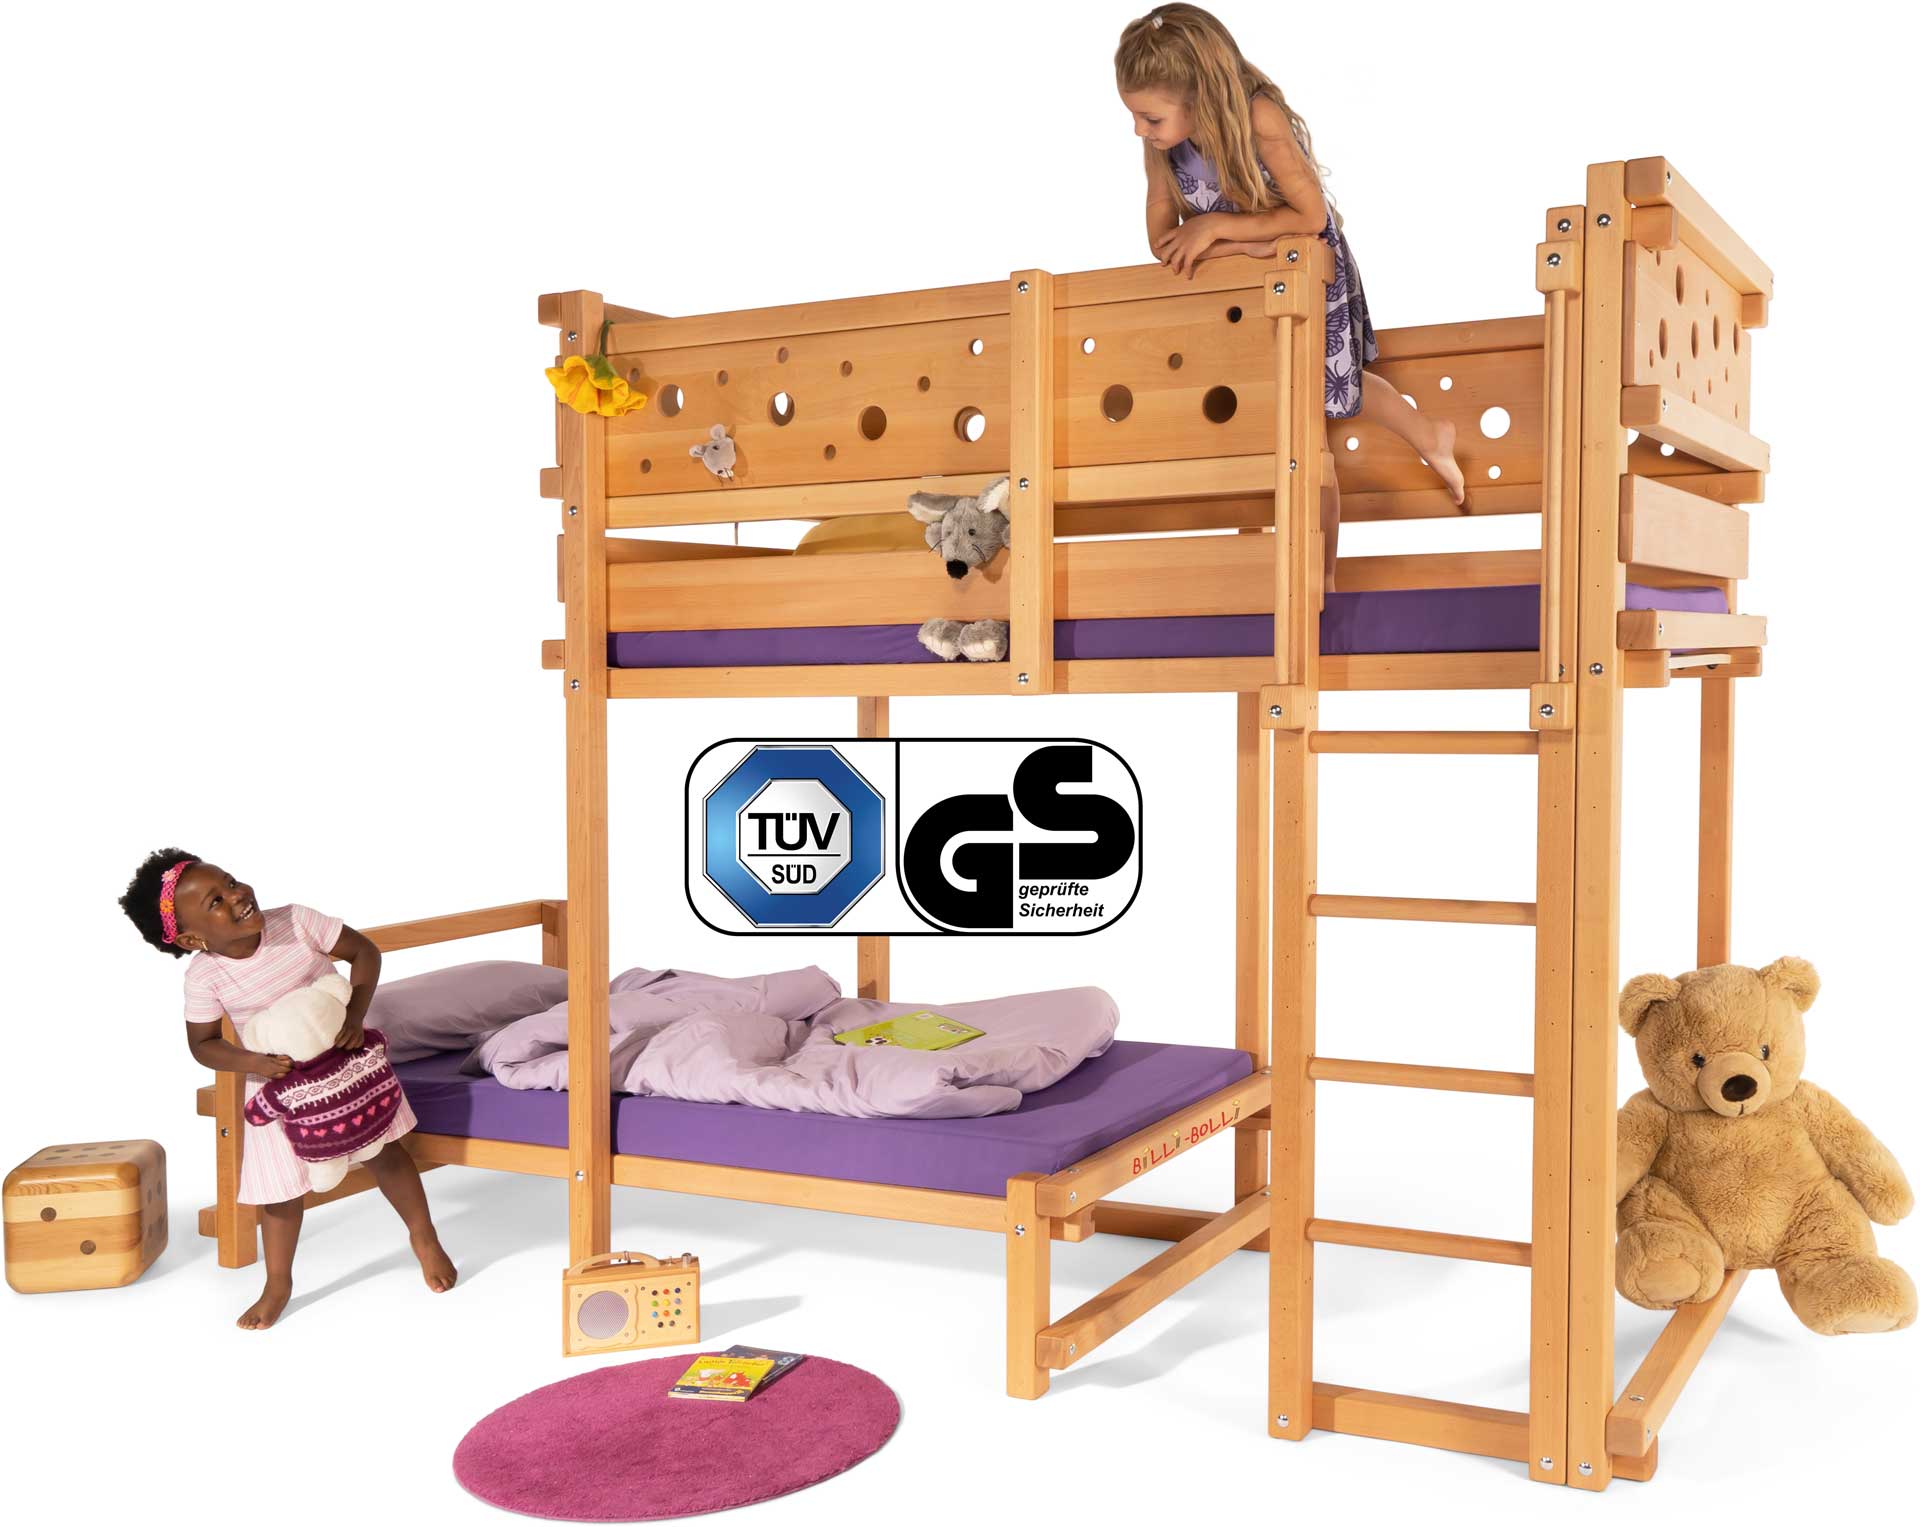 Kindermöbel im Kinderzimmer: Hochbetten, Etagenbetten, Kinderbetten und Babybetten